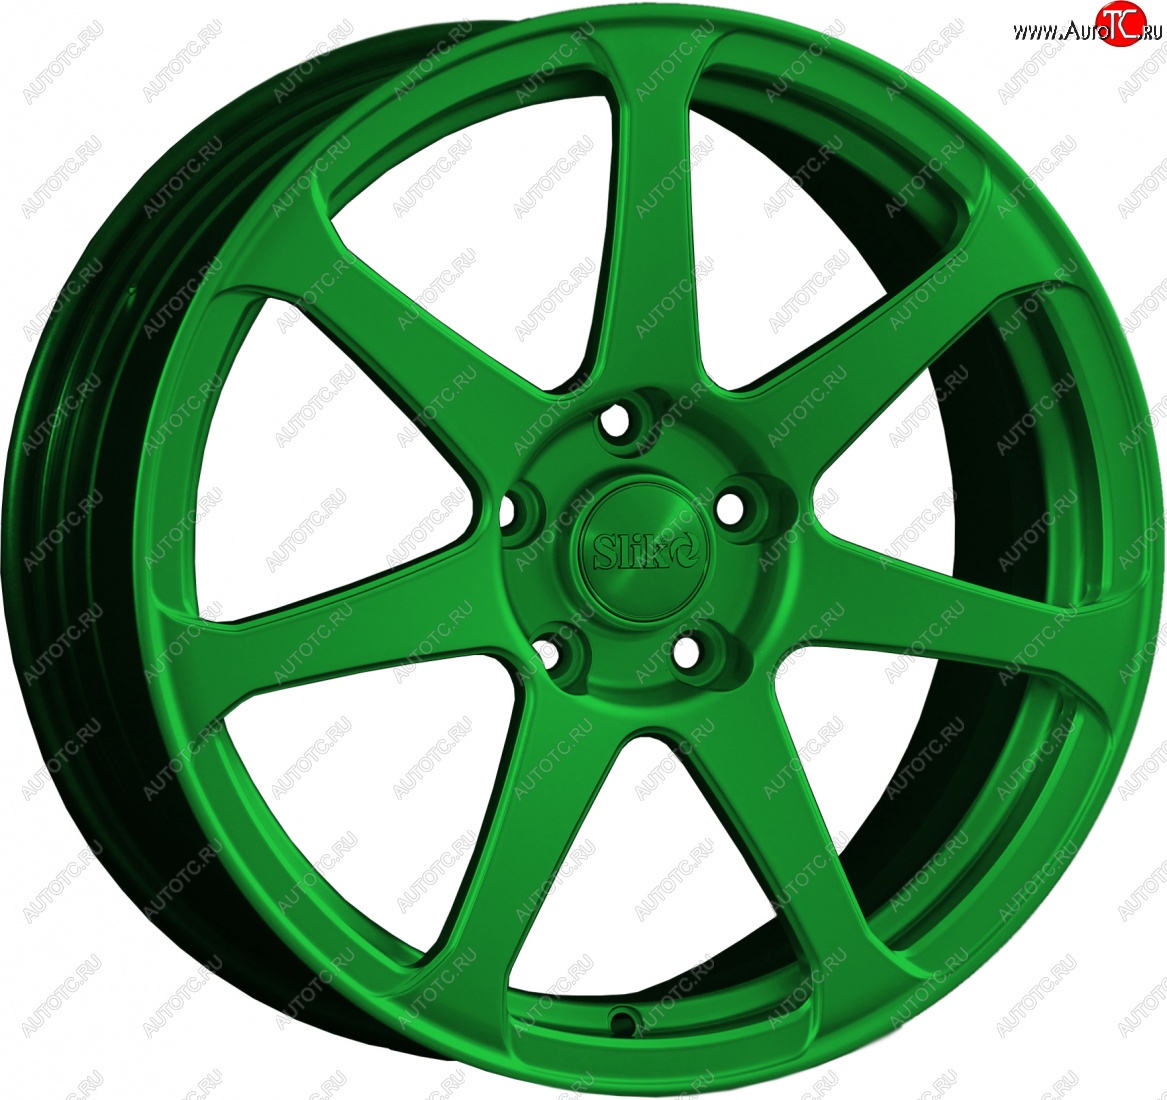 14 499 р. Кованый диск Slik classik R17x7.5 Зеленый (GREEN) 7.5x17 Chevrolet Lacetti хэтчбек (2002-2013) 4x114.3xDIA56.6xET44.0 (Цвет: GREEN)